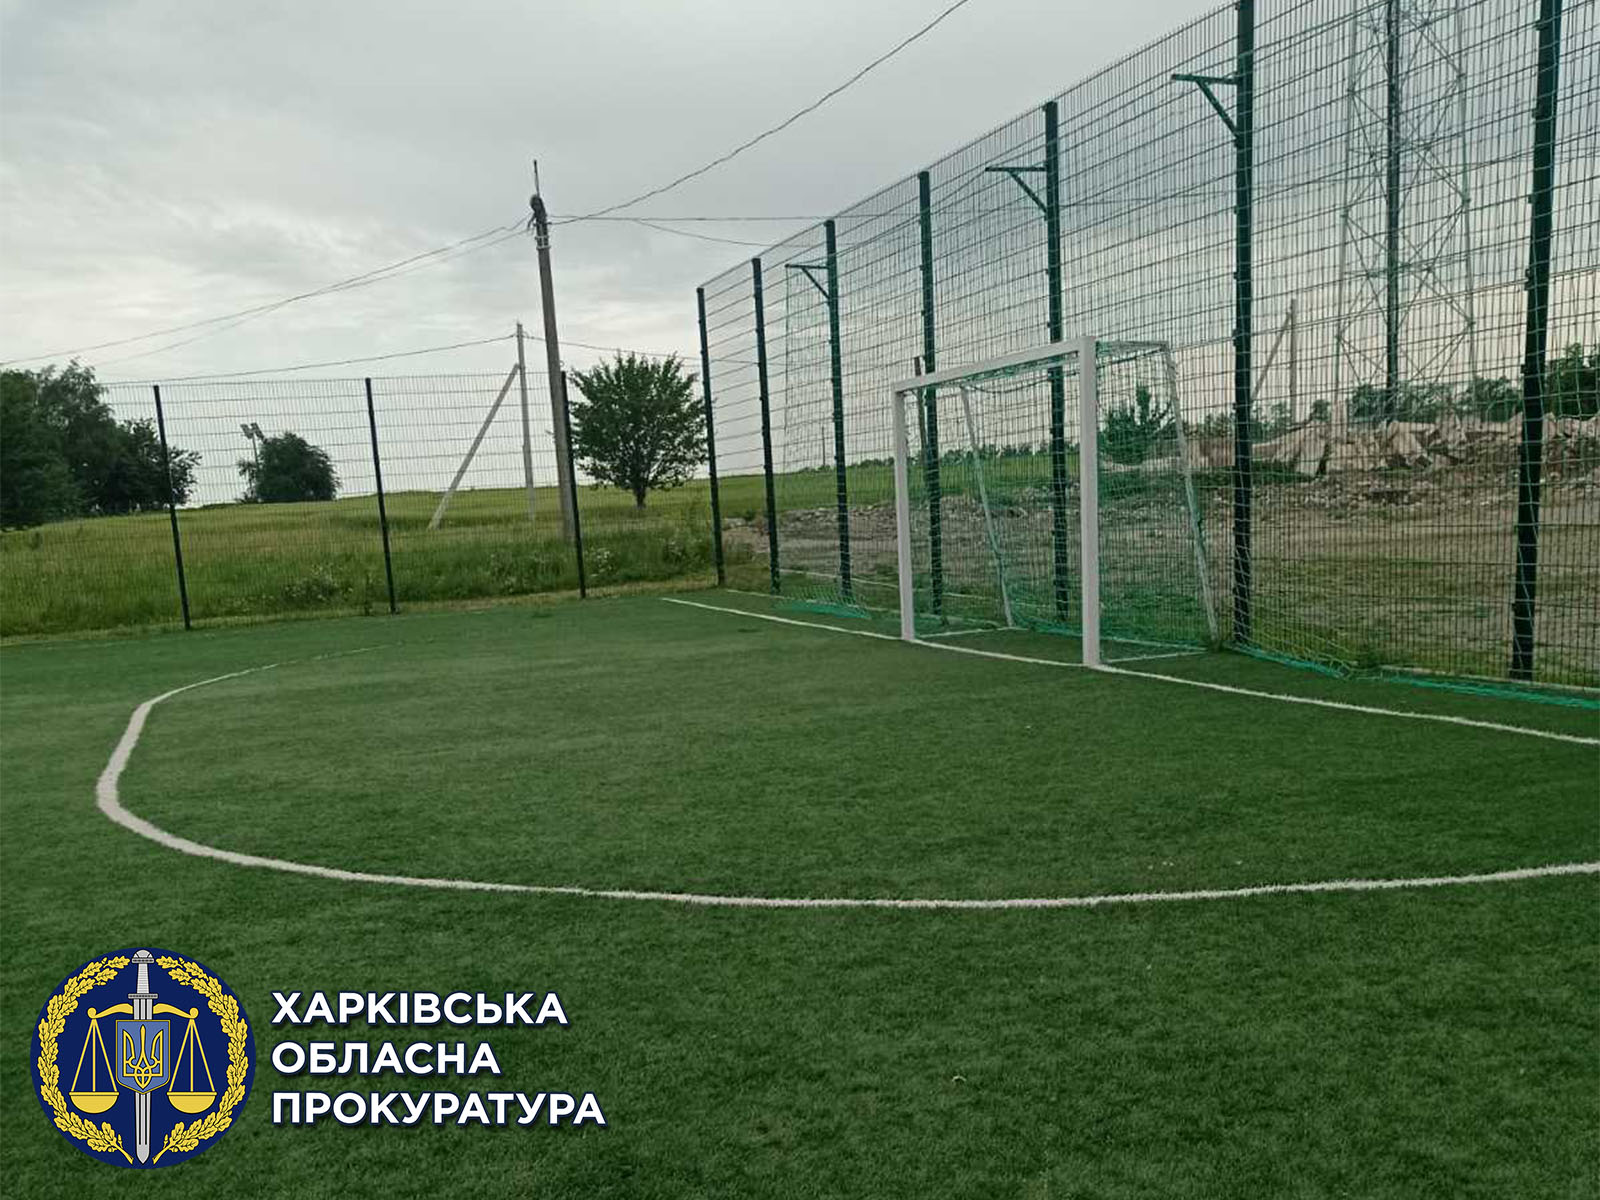 300 000 гривен переплатили за строительство футбольного поля на Харьковщине